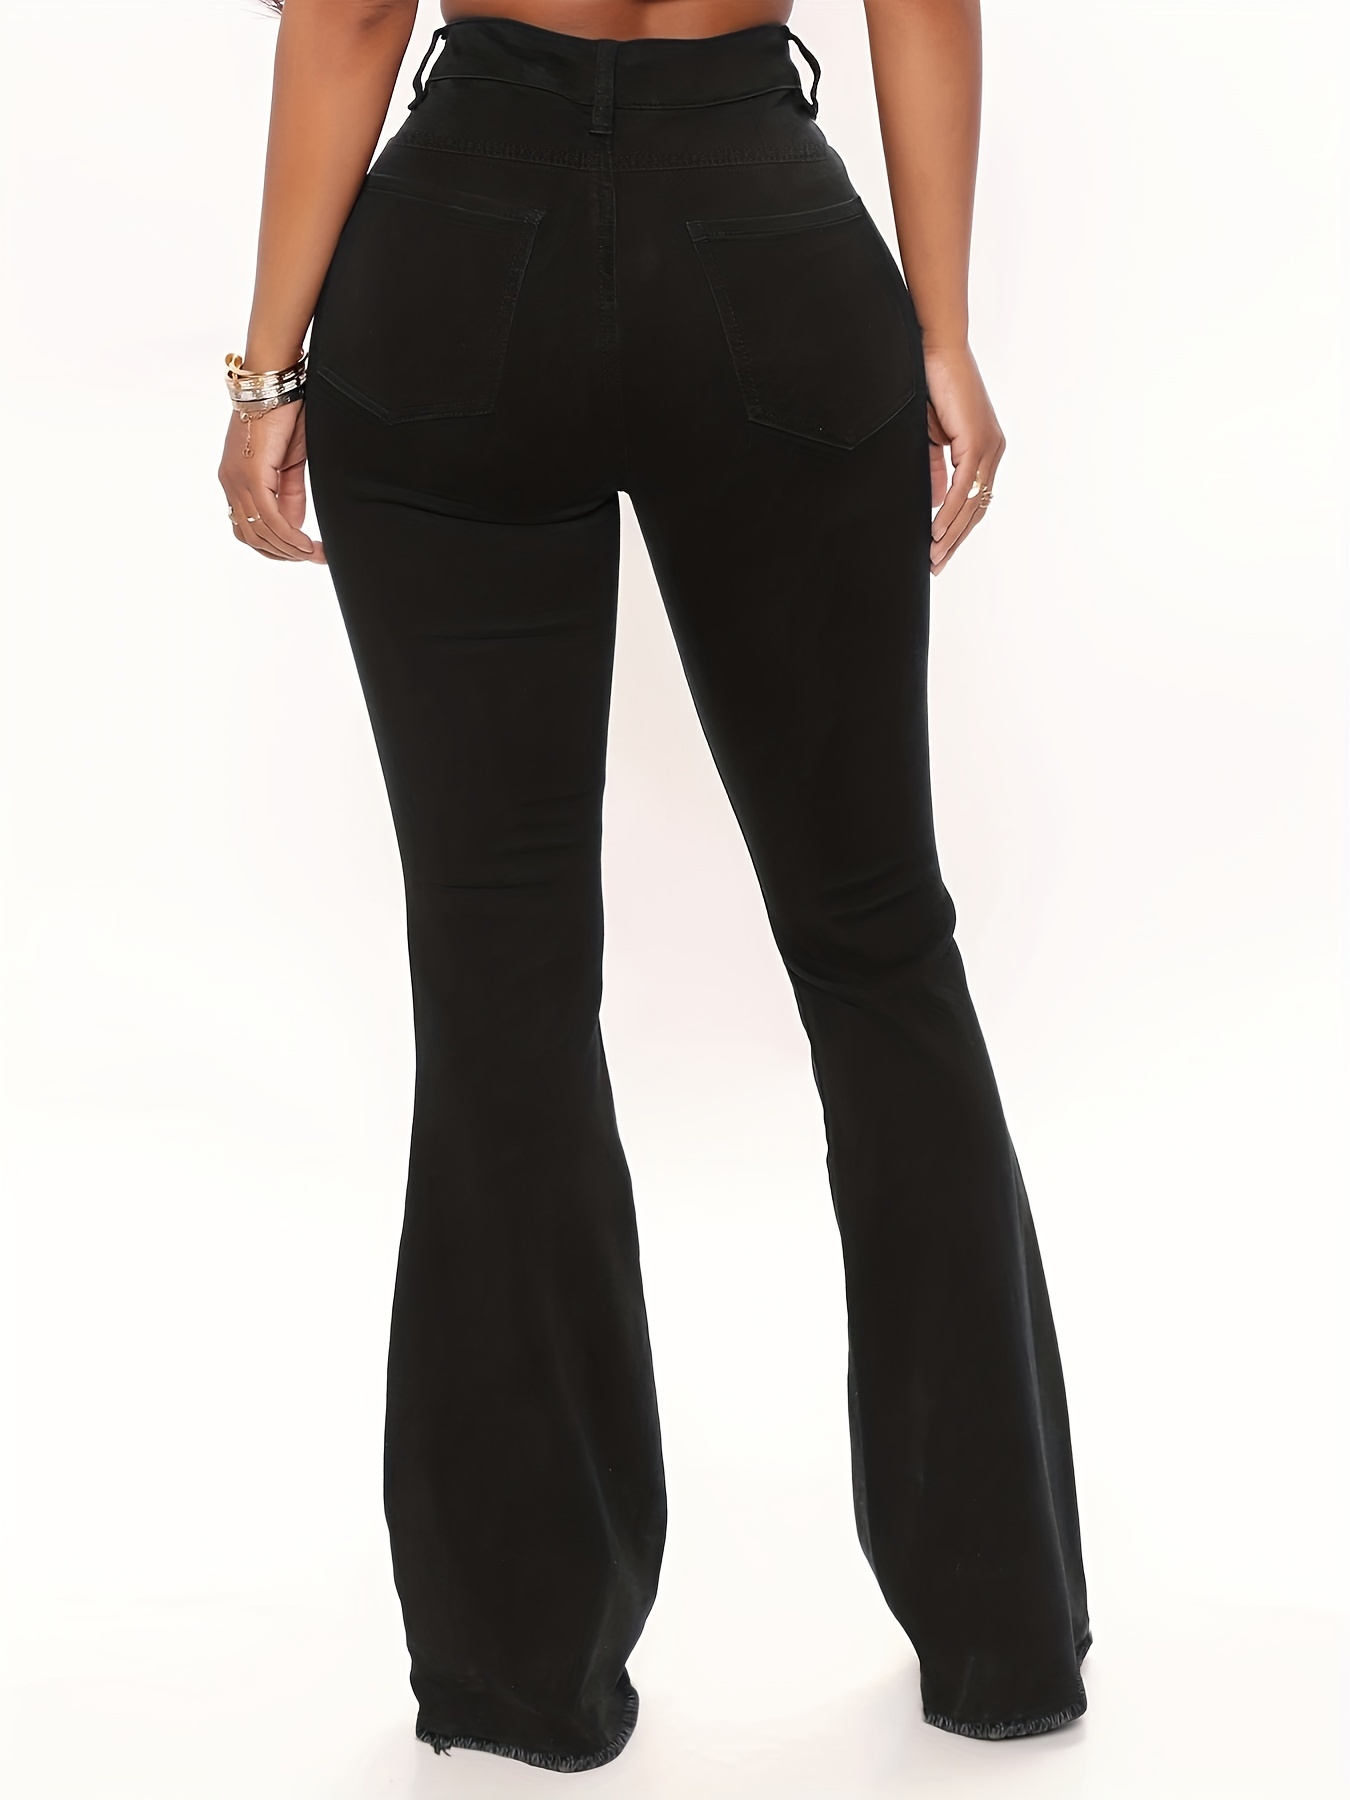 VIPONES Black Jeans for Women Bell Bottom High Waisted Flare Jean